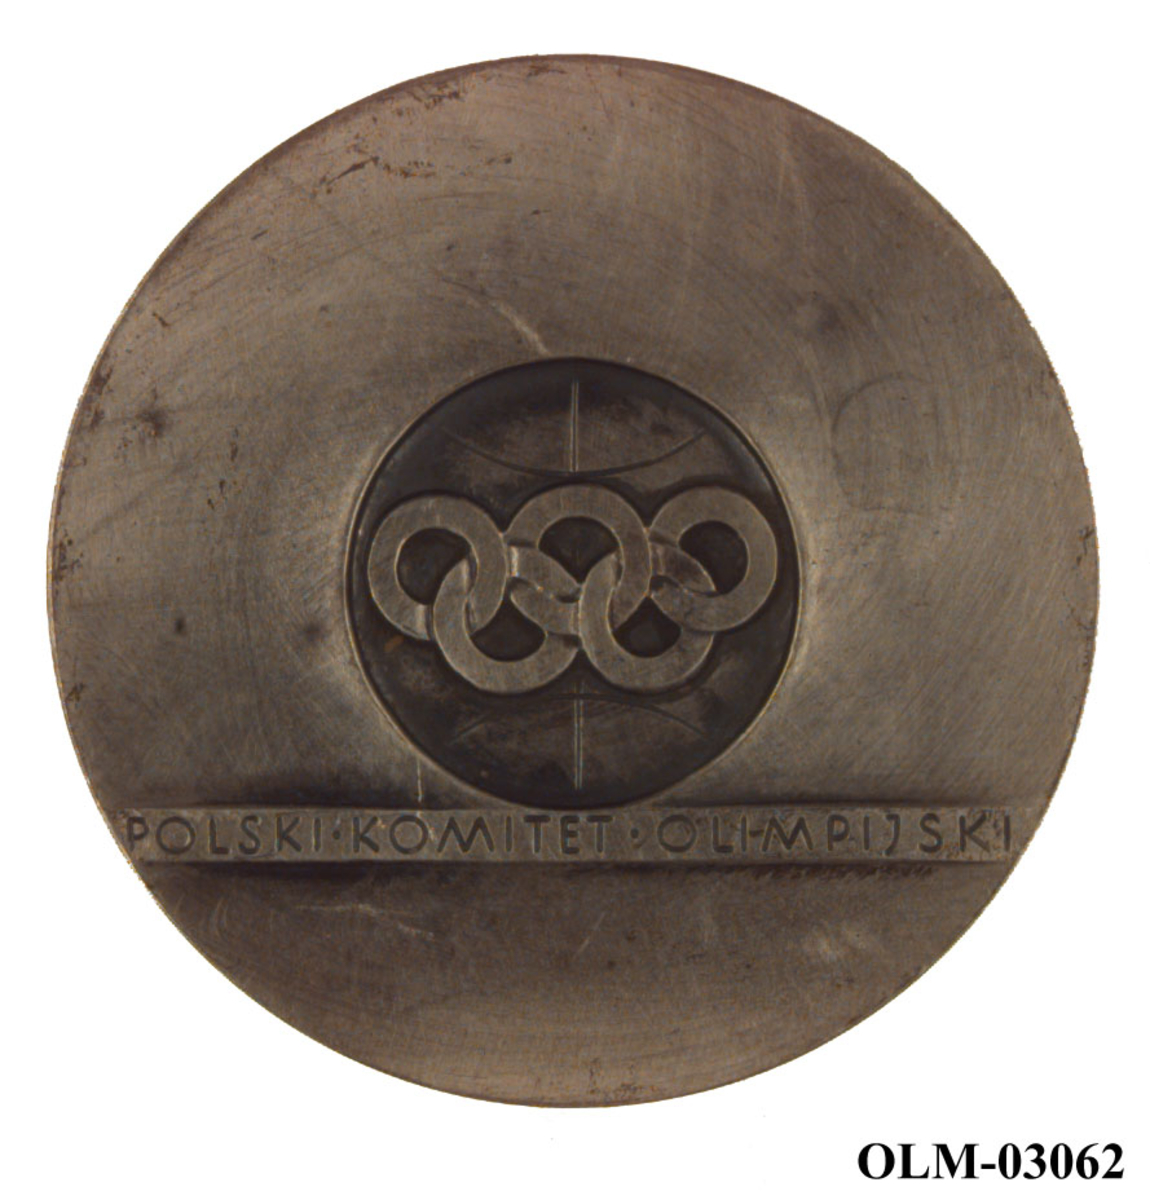 Sølvfarget medalje med motiv av de olympiske ringer og løpende atleter. Det er også et stilisert mønster/motiv på medaljen. Det følger med en rød eske til medaljen.